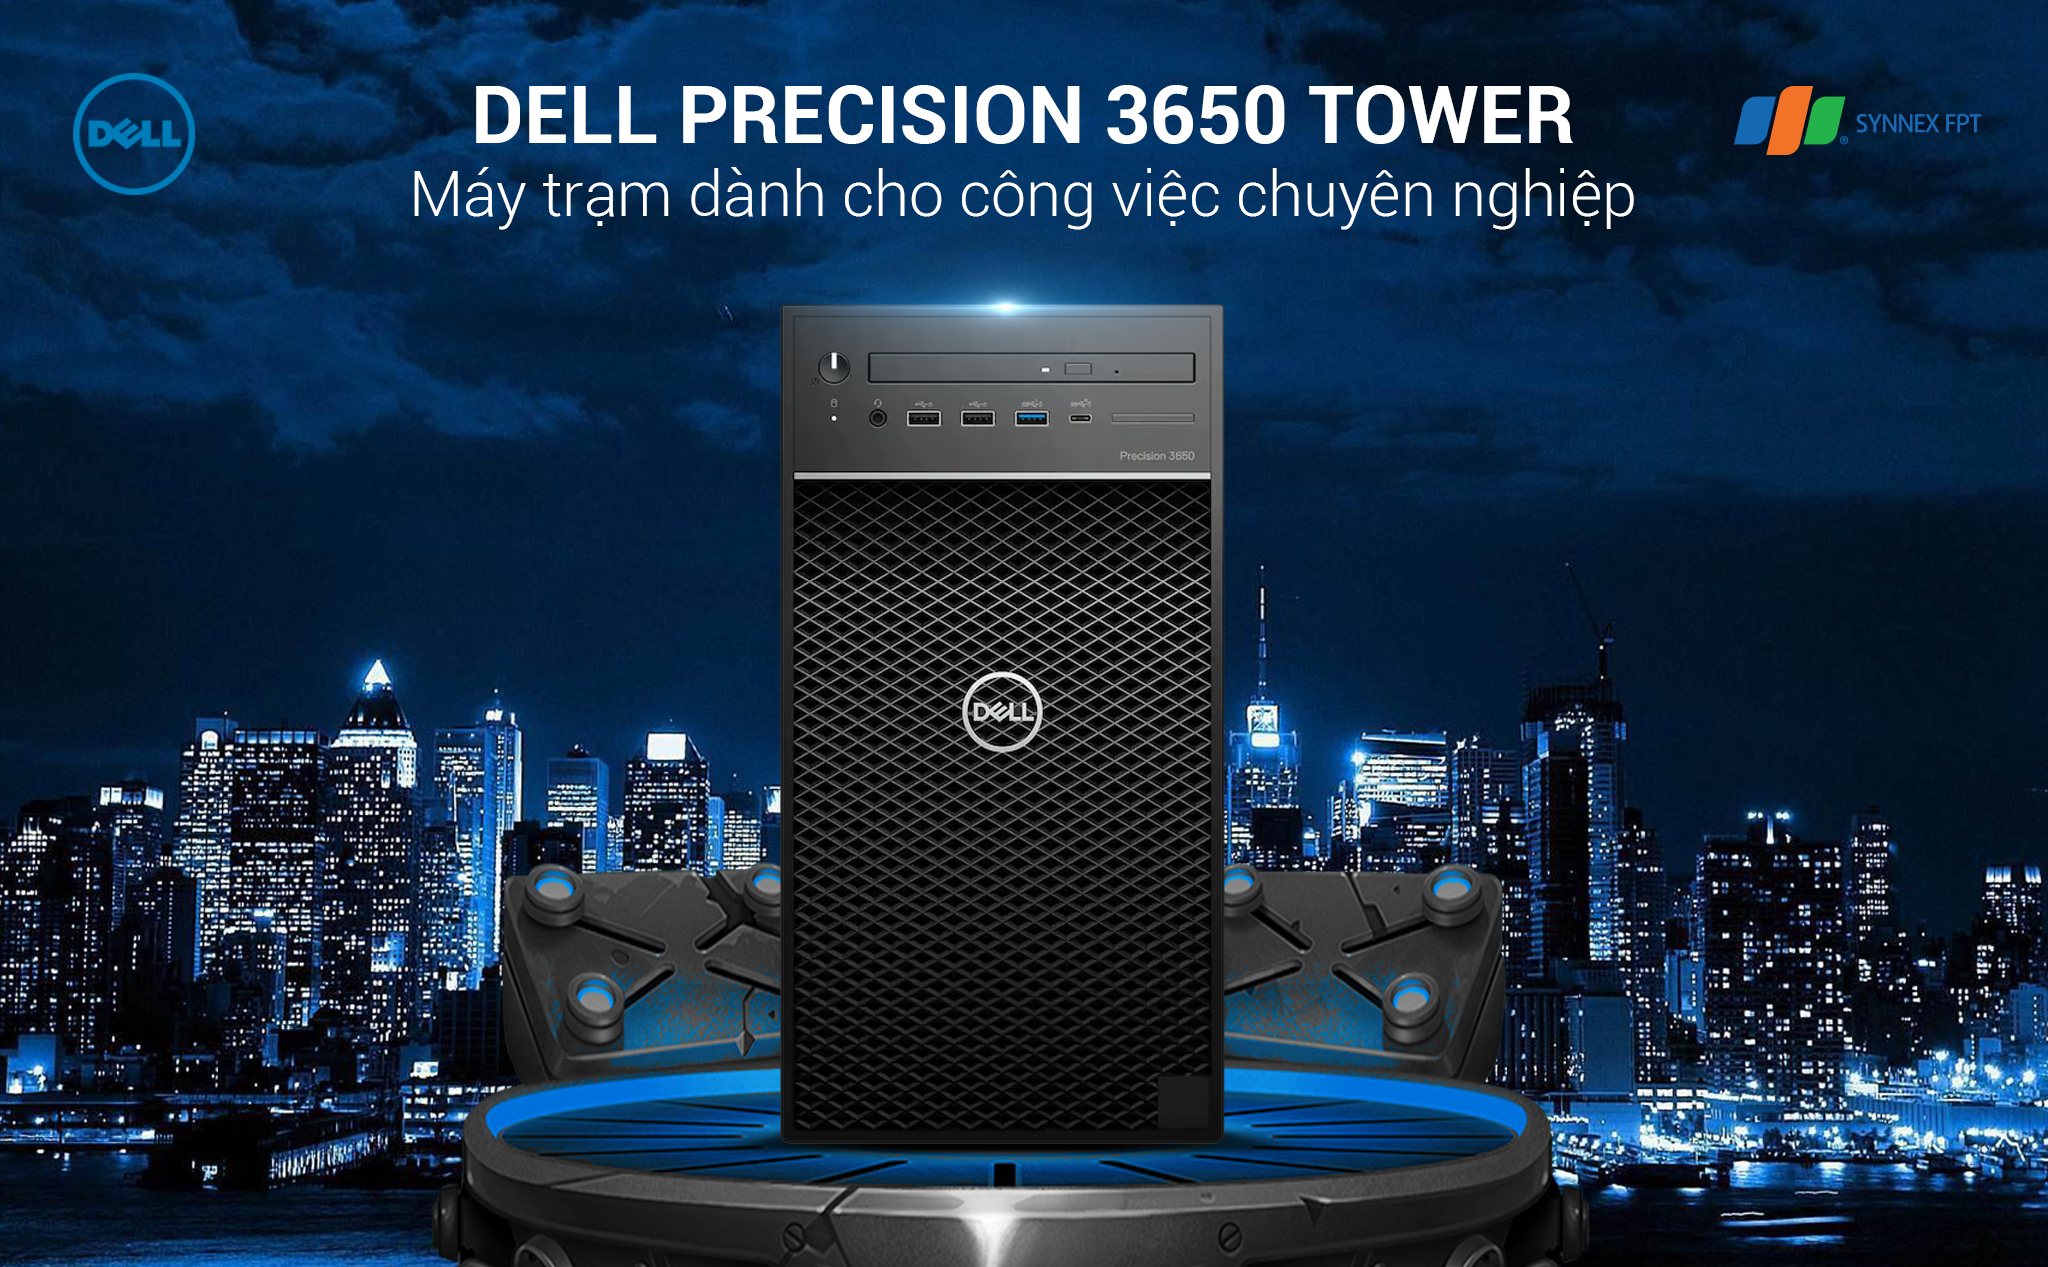 [QC] Cỗ máy kiếm tiền Dell Precision 3650 Tower dân thiết kế không thể bỏ lỡ